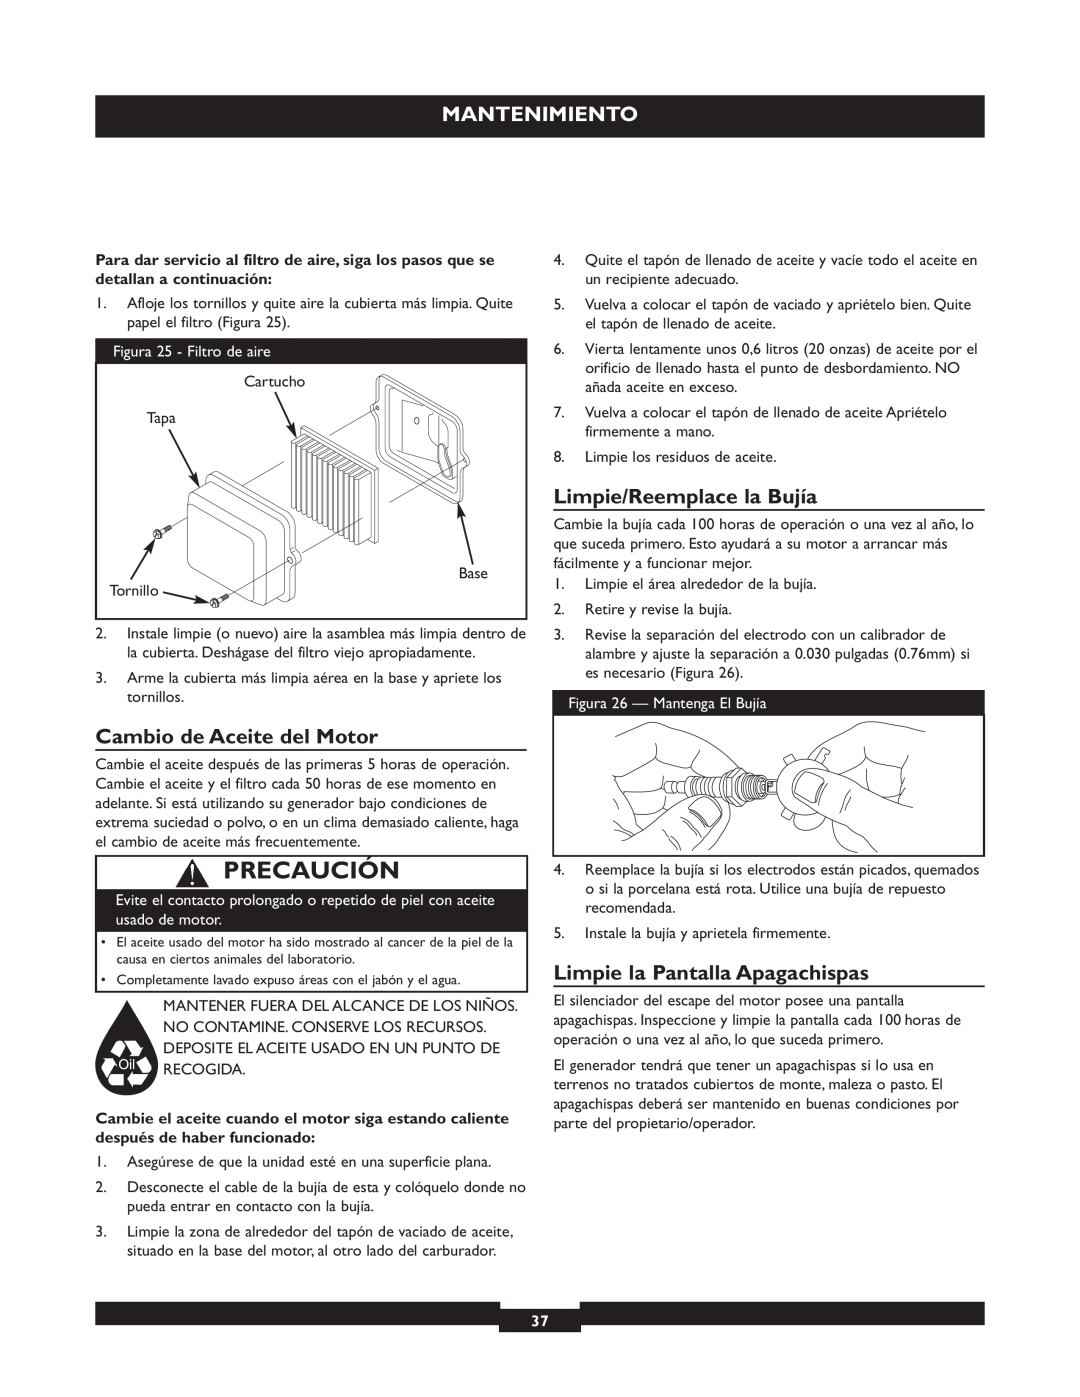 Briggs & Stratton 30219 manual Precaución, Mantenimiento, Limpie/Reemplace la Bujía, Cambio de Aceite del Motor 